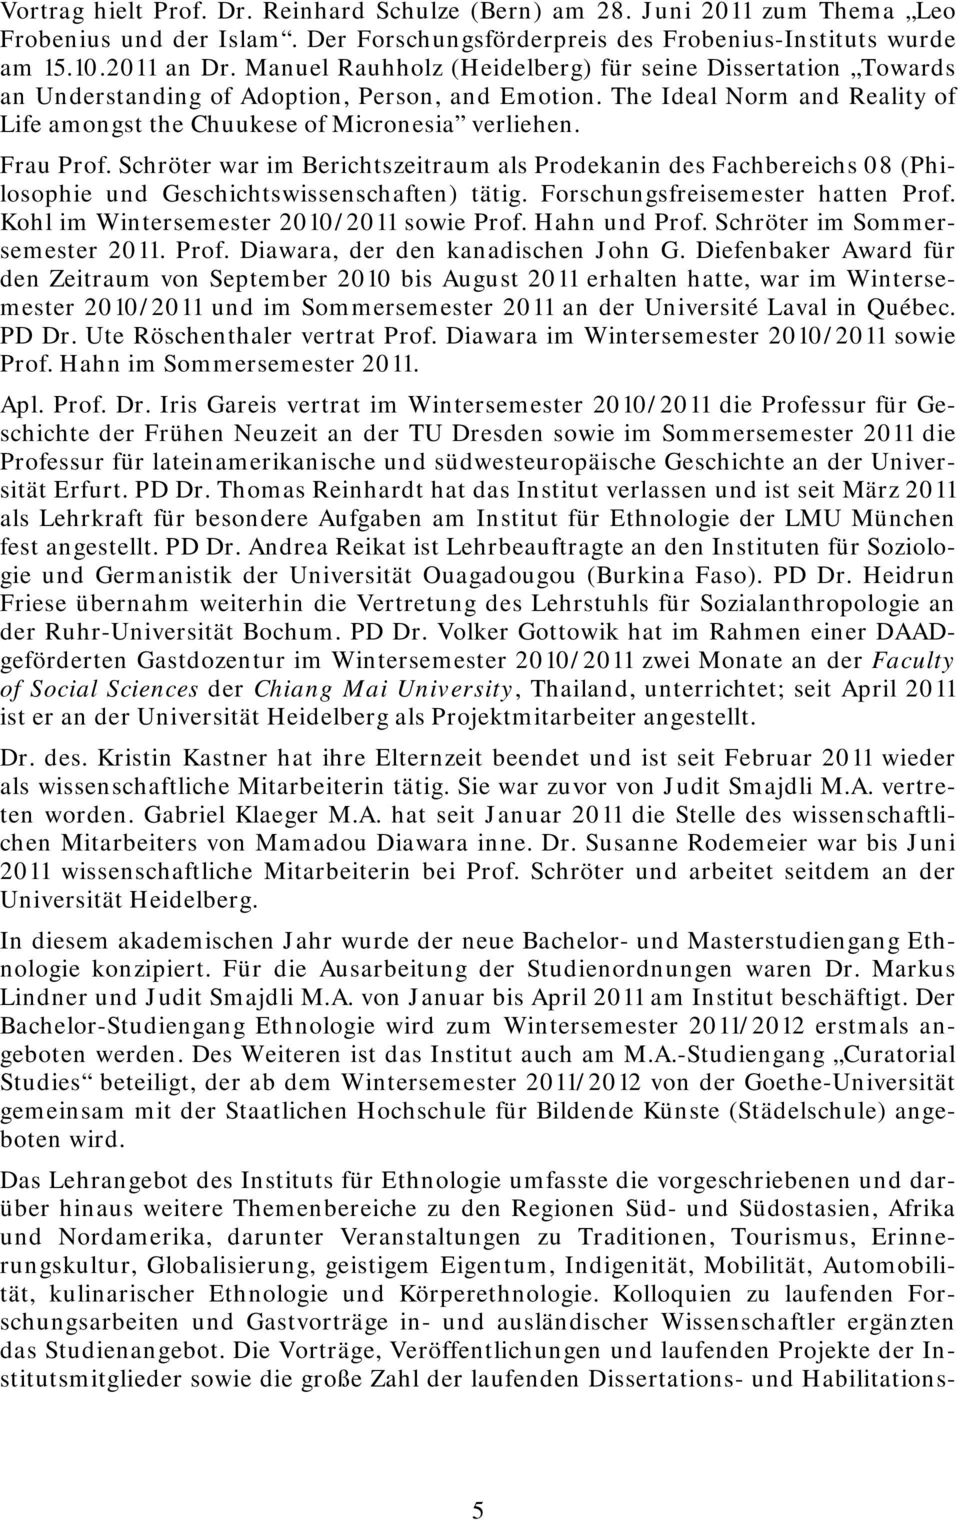 Frau Prof. Schröter war im Berichtszeitraum als Prodekanin des Fachbereichs 08 (Philosophie und Geschichtswissenschaften) tätig. Forschungsfreisemester hatten Prof.